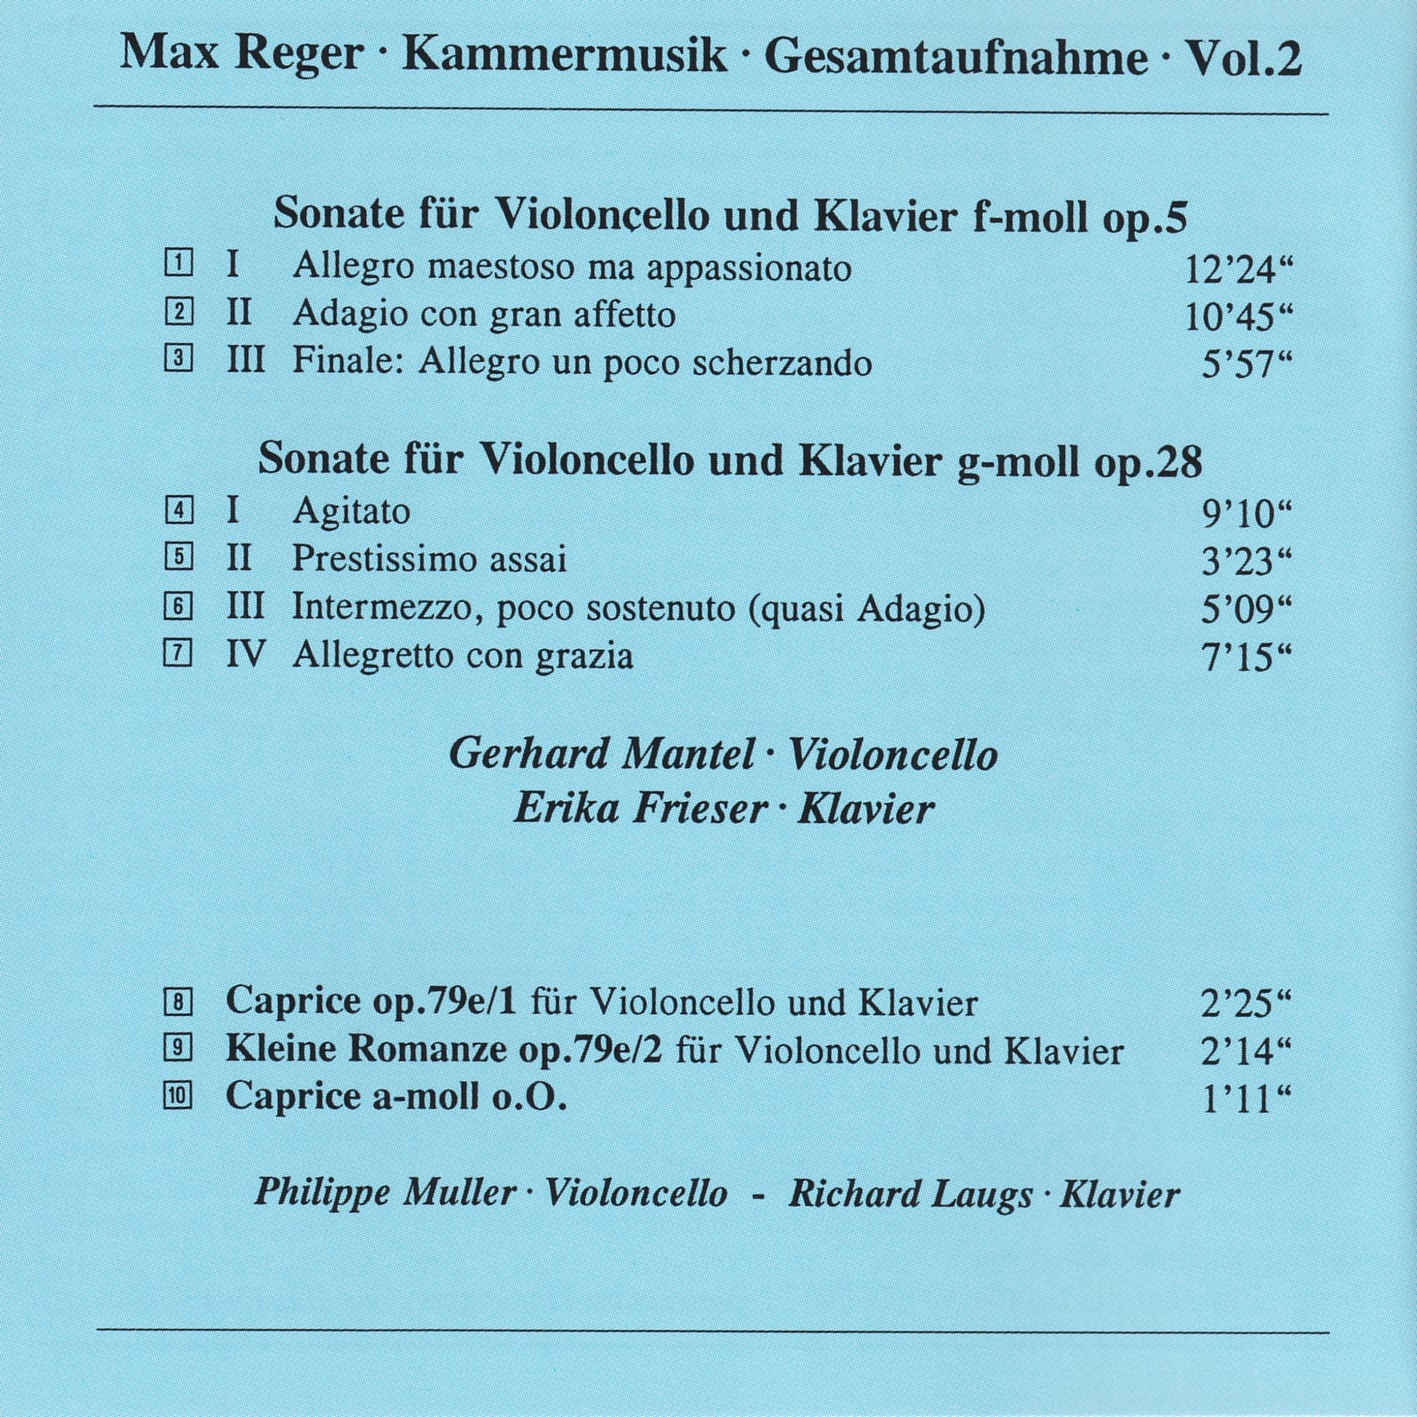 Max Reger - Kammermusik komplett Vol. 2